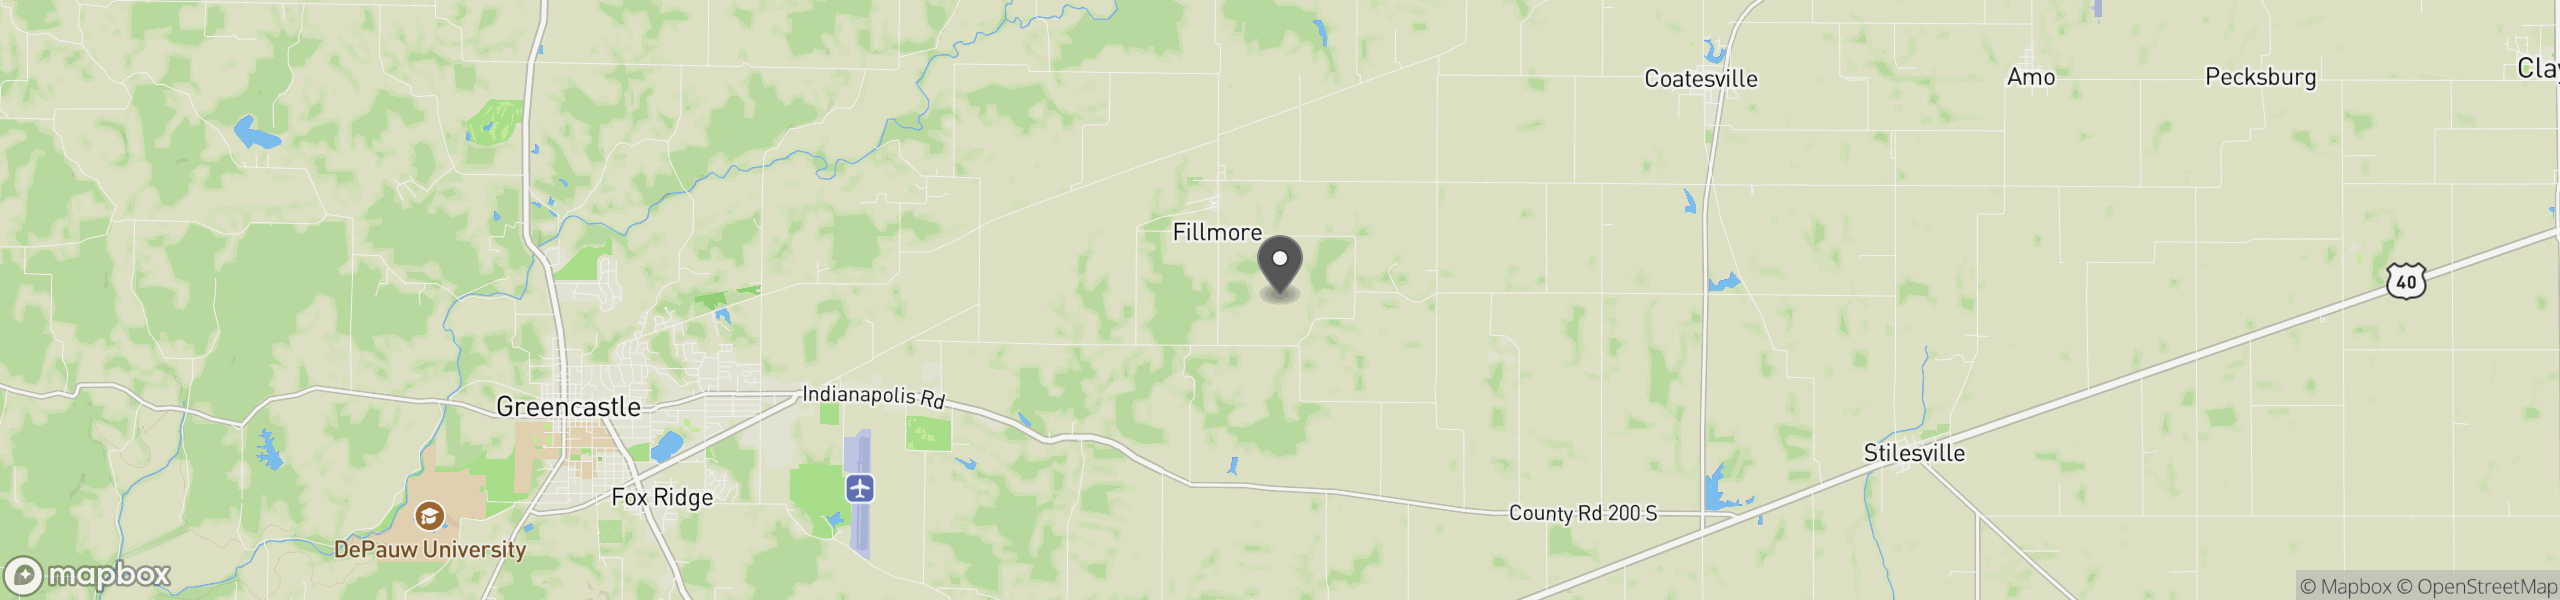 Fillmore, IN